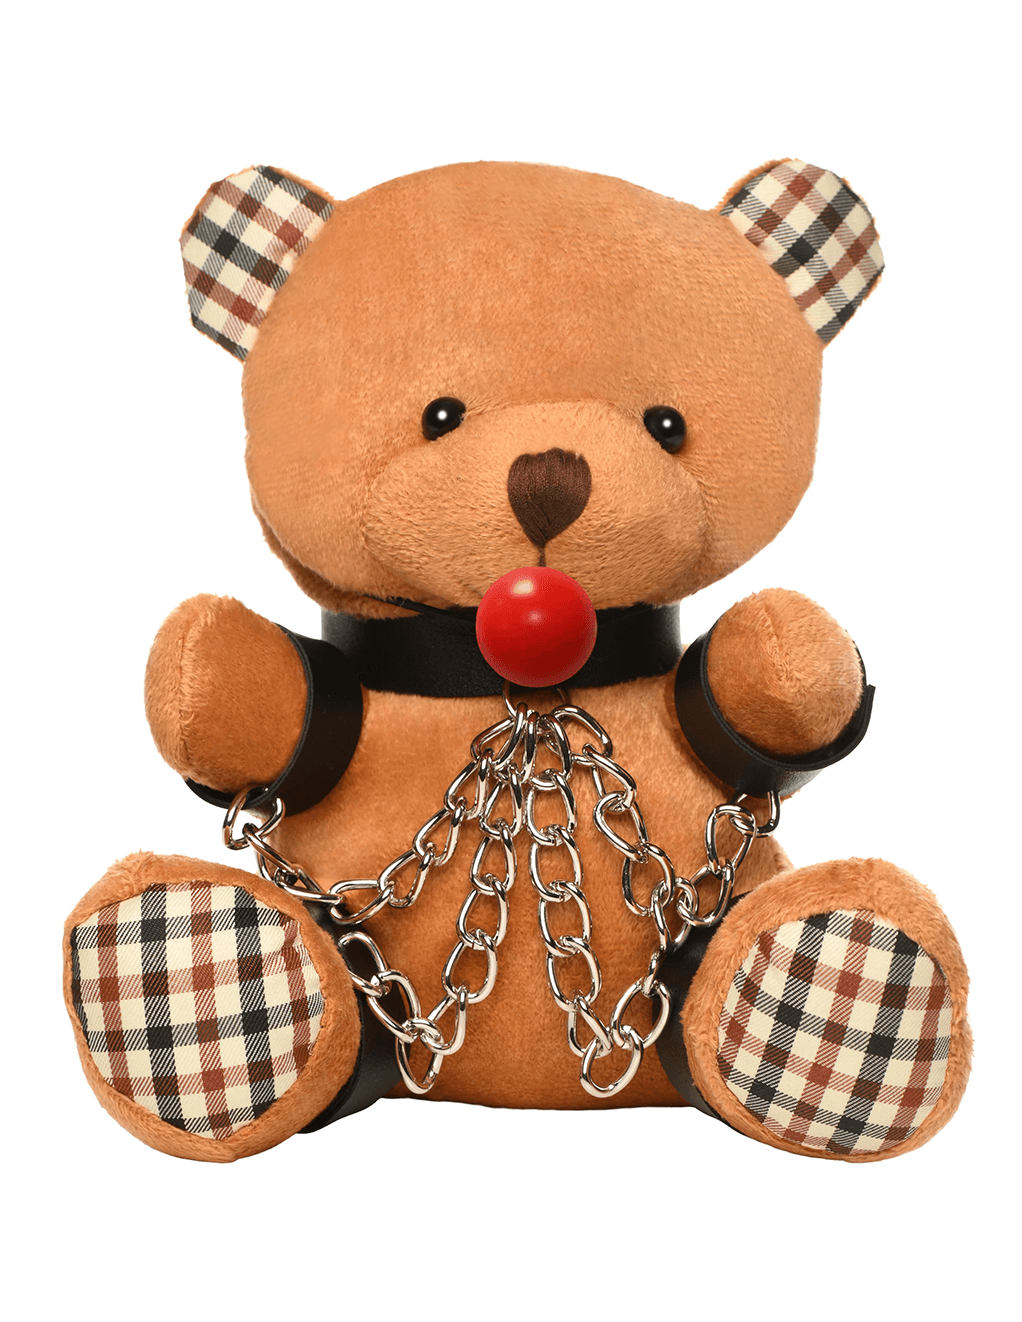 Gagged Teddy Bear